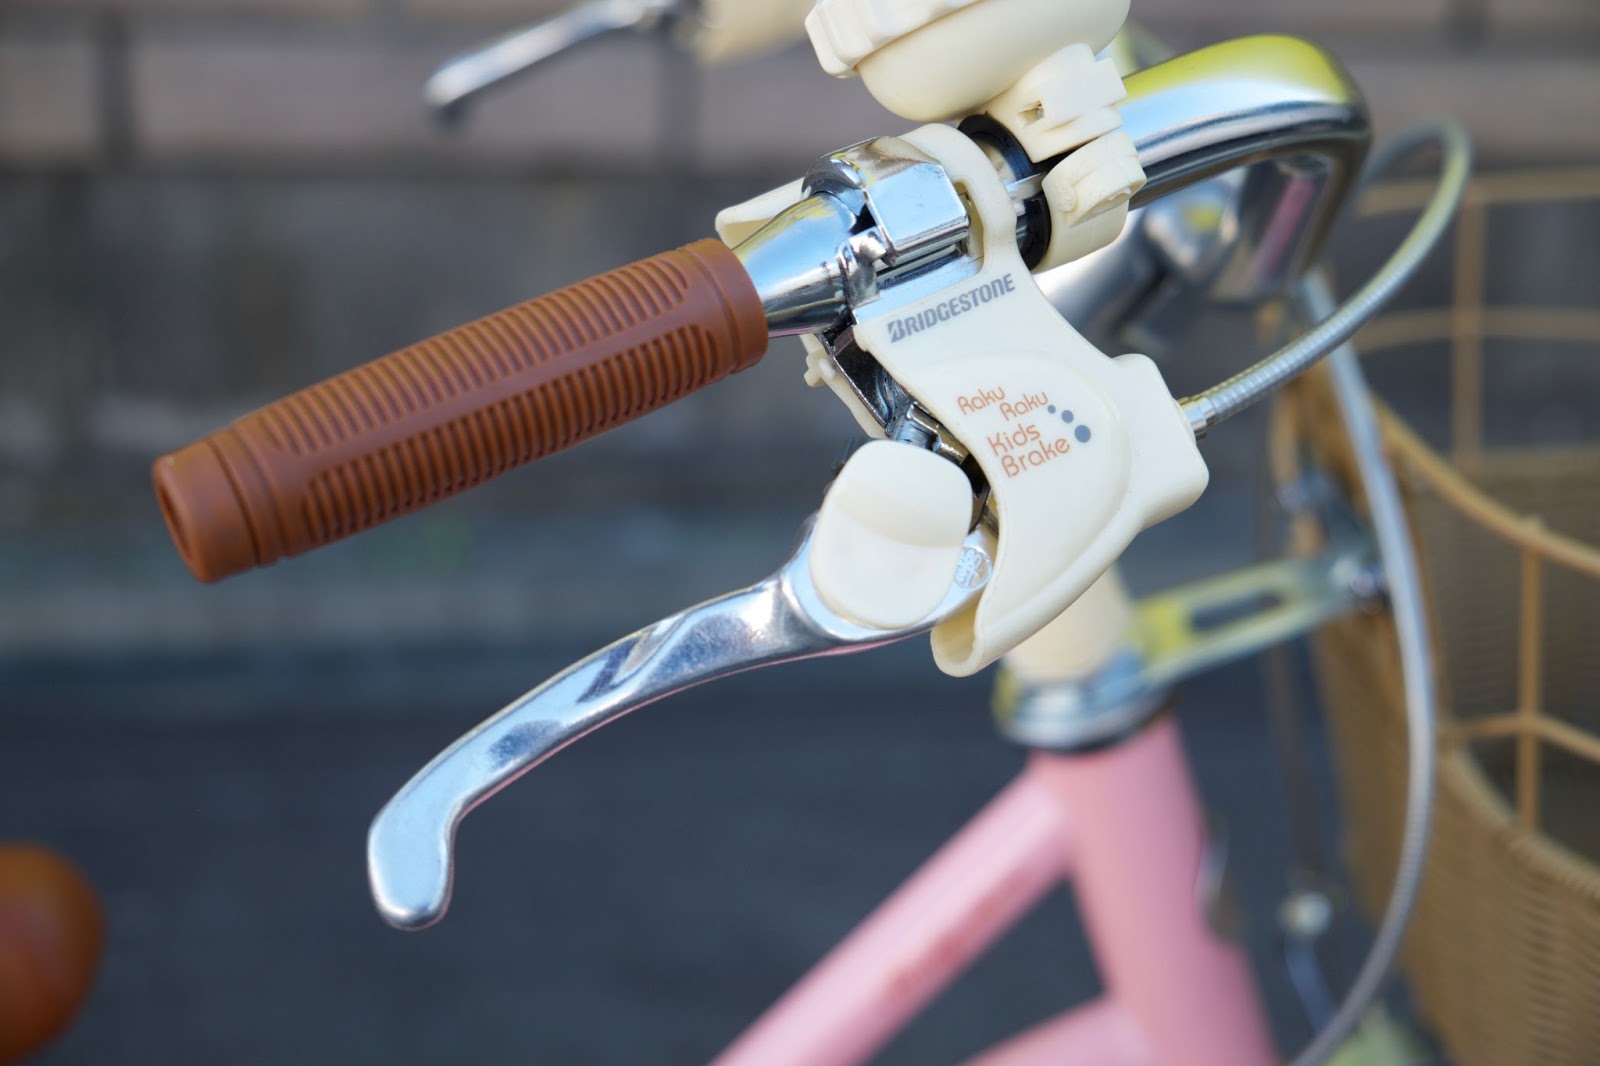 自転車のイシイ『Blog141』 子供車のブレーキは きちんと止まれるように